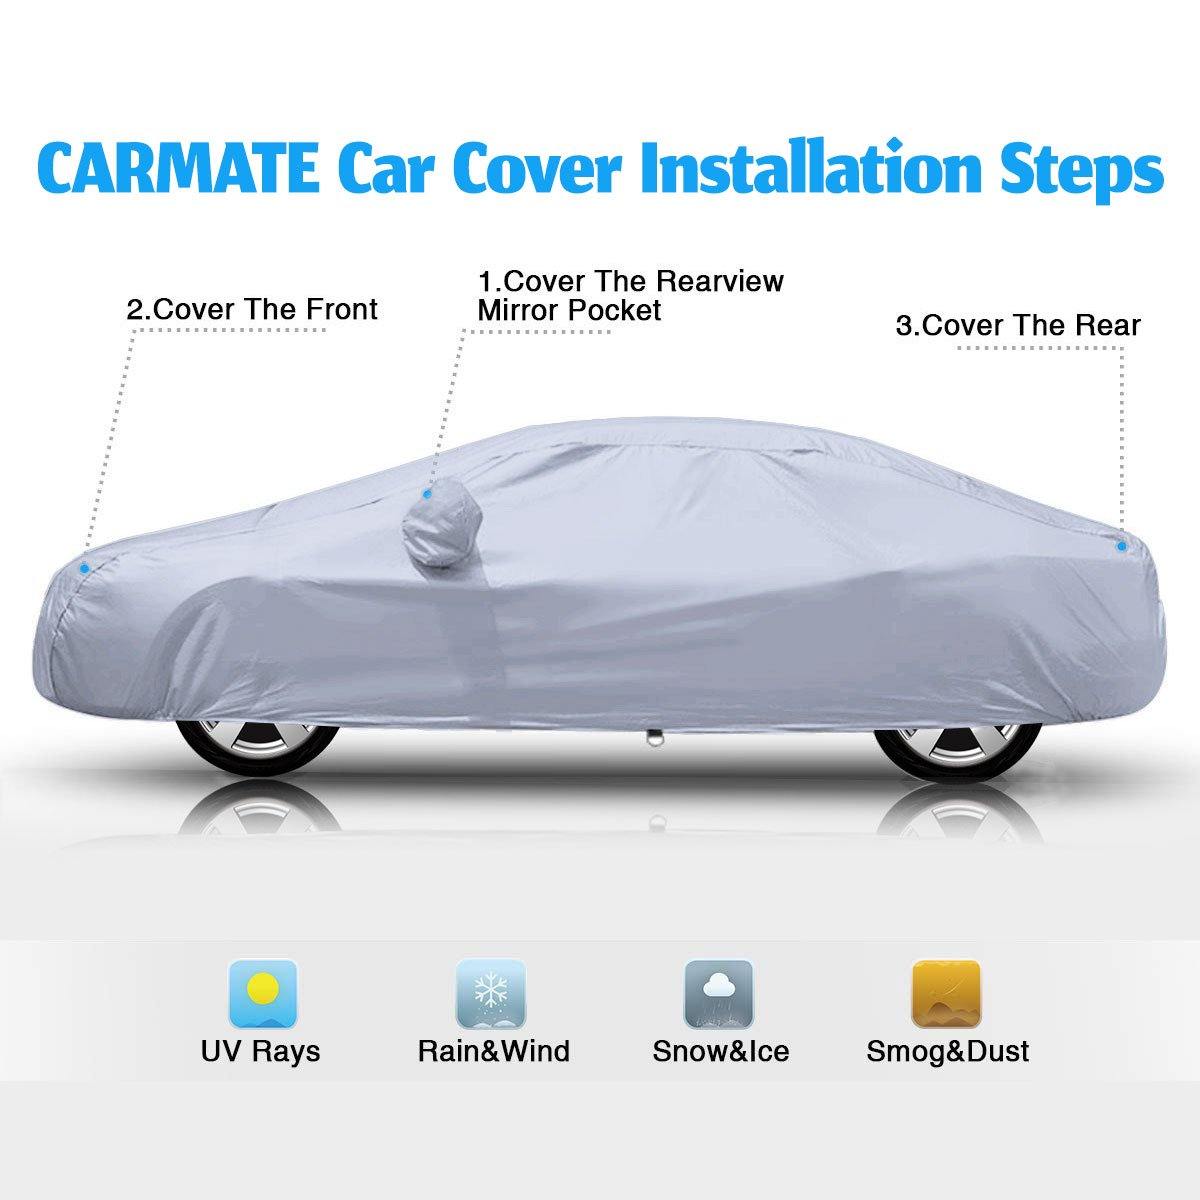 Carmate Premium Car Body Cover Silver Matty (Silver) for  Ford - Endeavour - CARMATE®